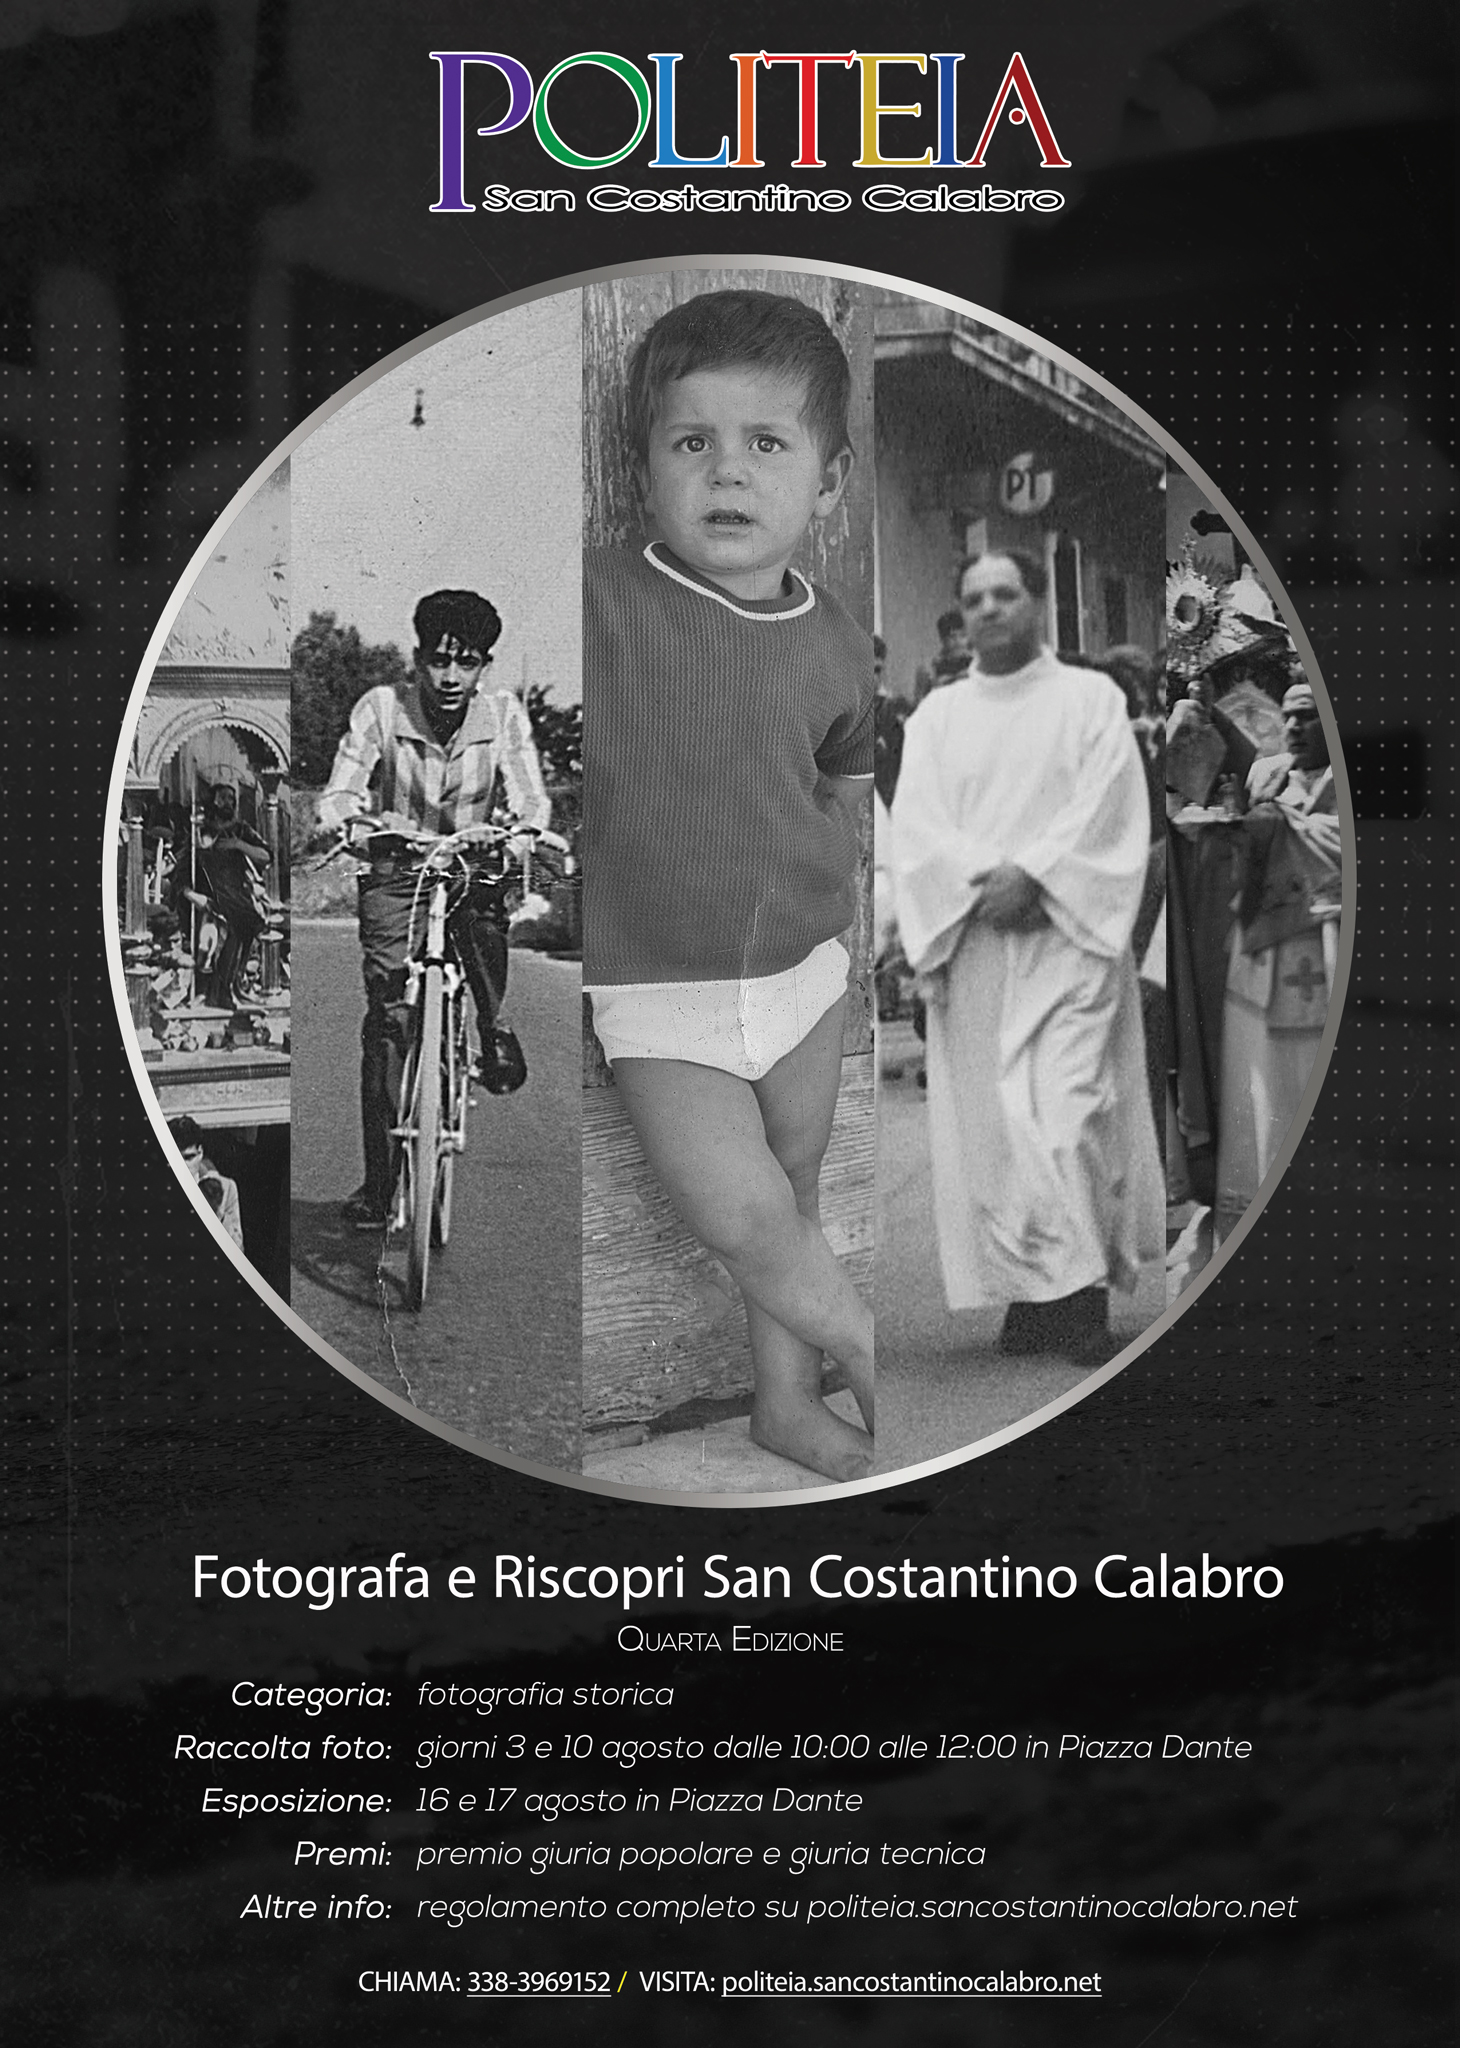 Quarta edizione del concorso fotografico "Fotografa e riscopri San Costantino Calabro"